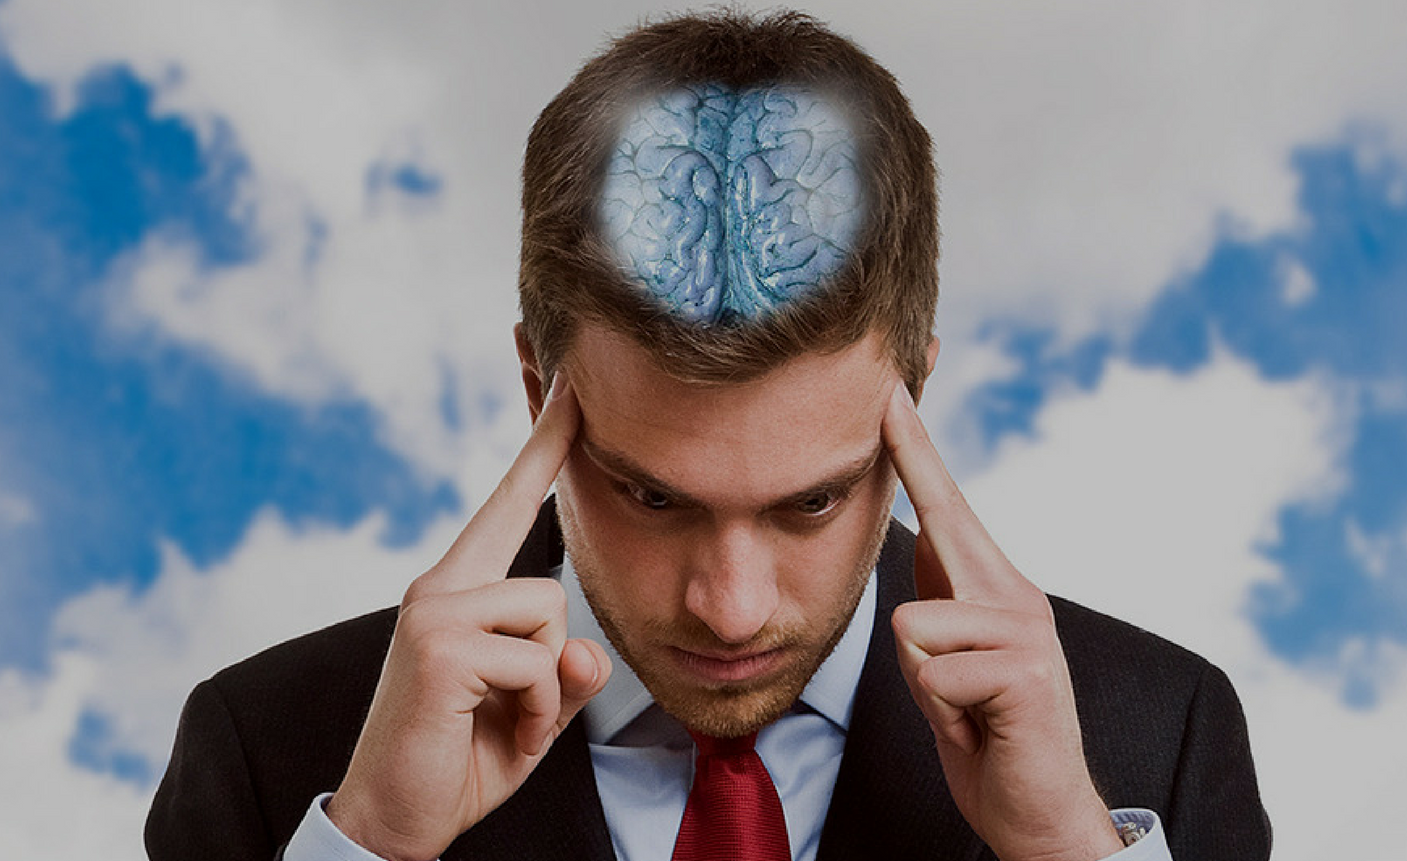 चिंता और तनाव के दौरे से मस्तिष्क पर पड़ता है गहरा असर